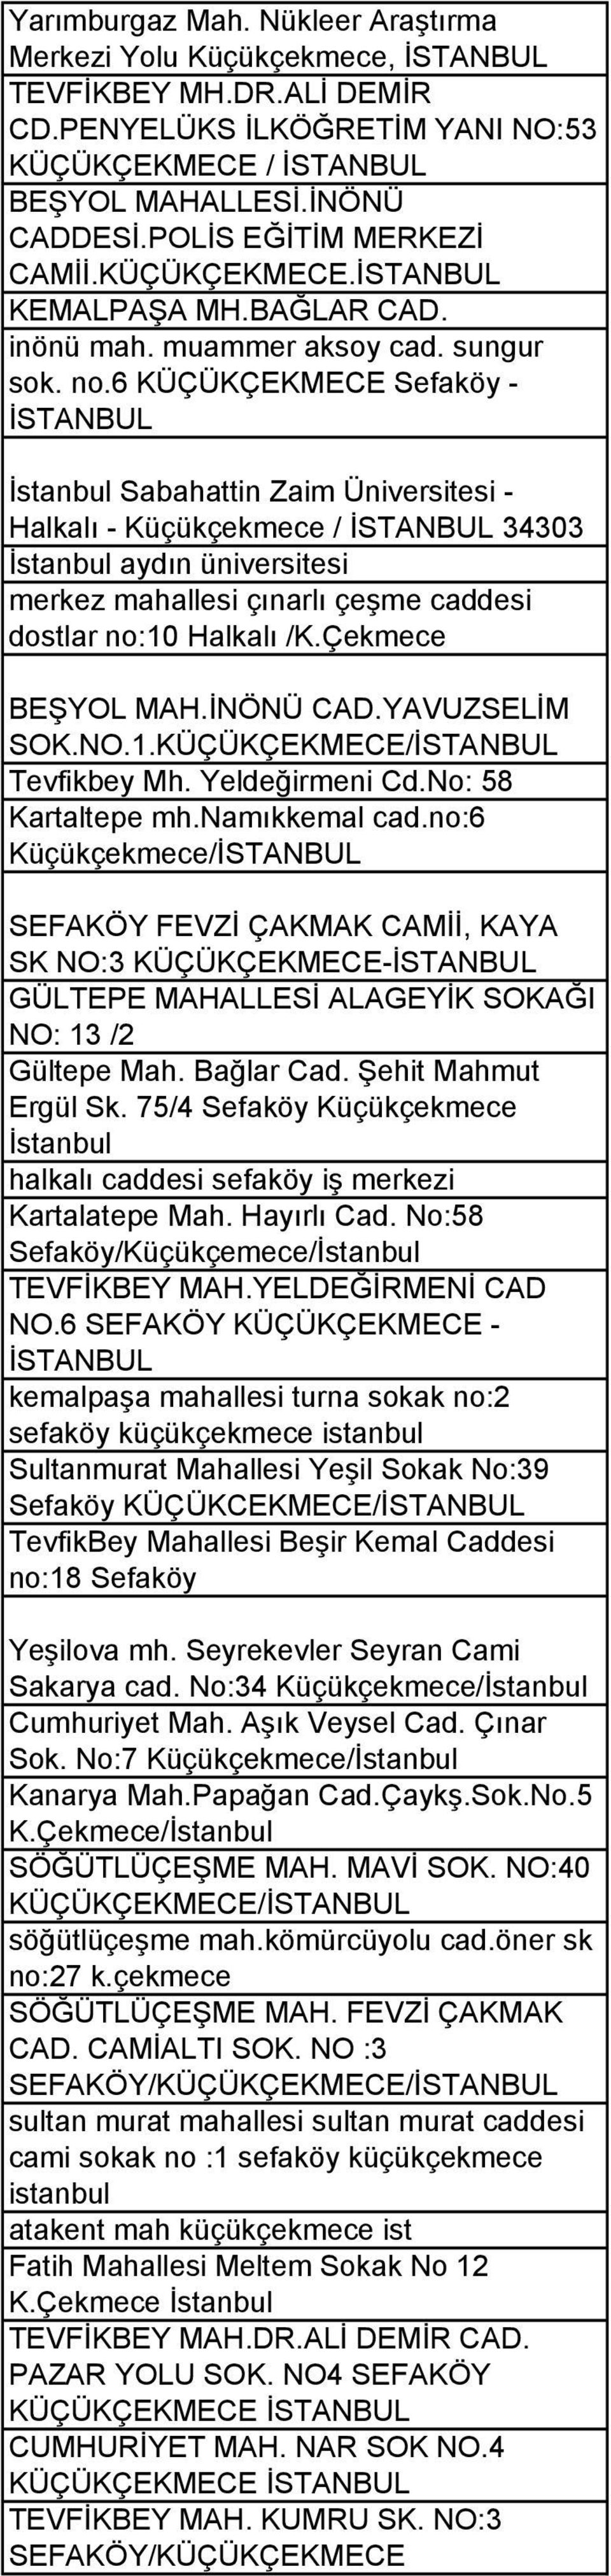 6 KÜÇÜKÇEKMECE Sefaköy - İSTANBUL İstanbul Sabahattin Zaim Üniversitesi - Halkalı - Küçükçekmece / İSTANBUL 34303 İstanbul aydın üniversitesi merkez mahallesi çınarlı çeşme caddesi dostlar no:10